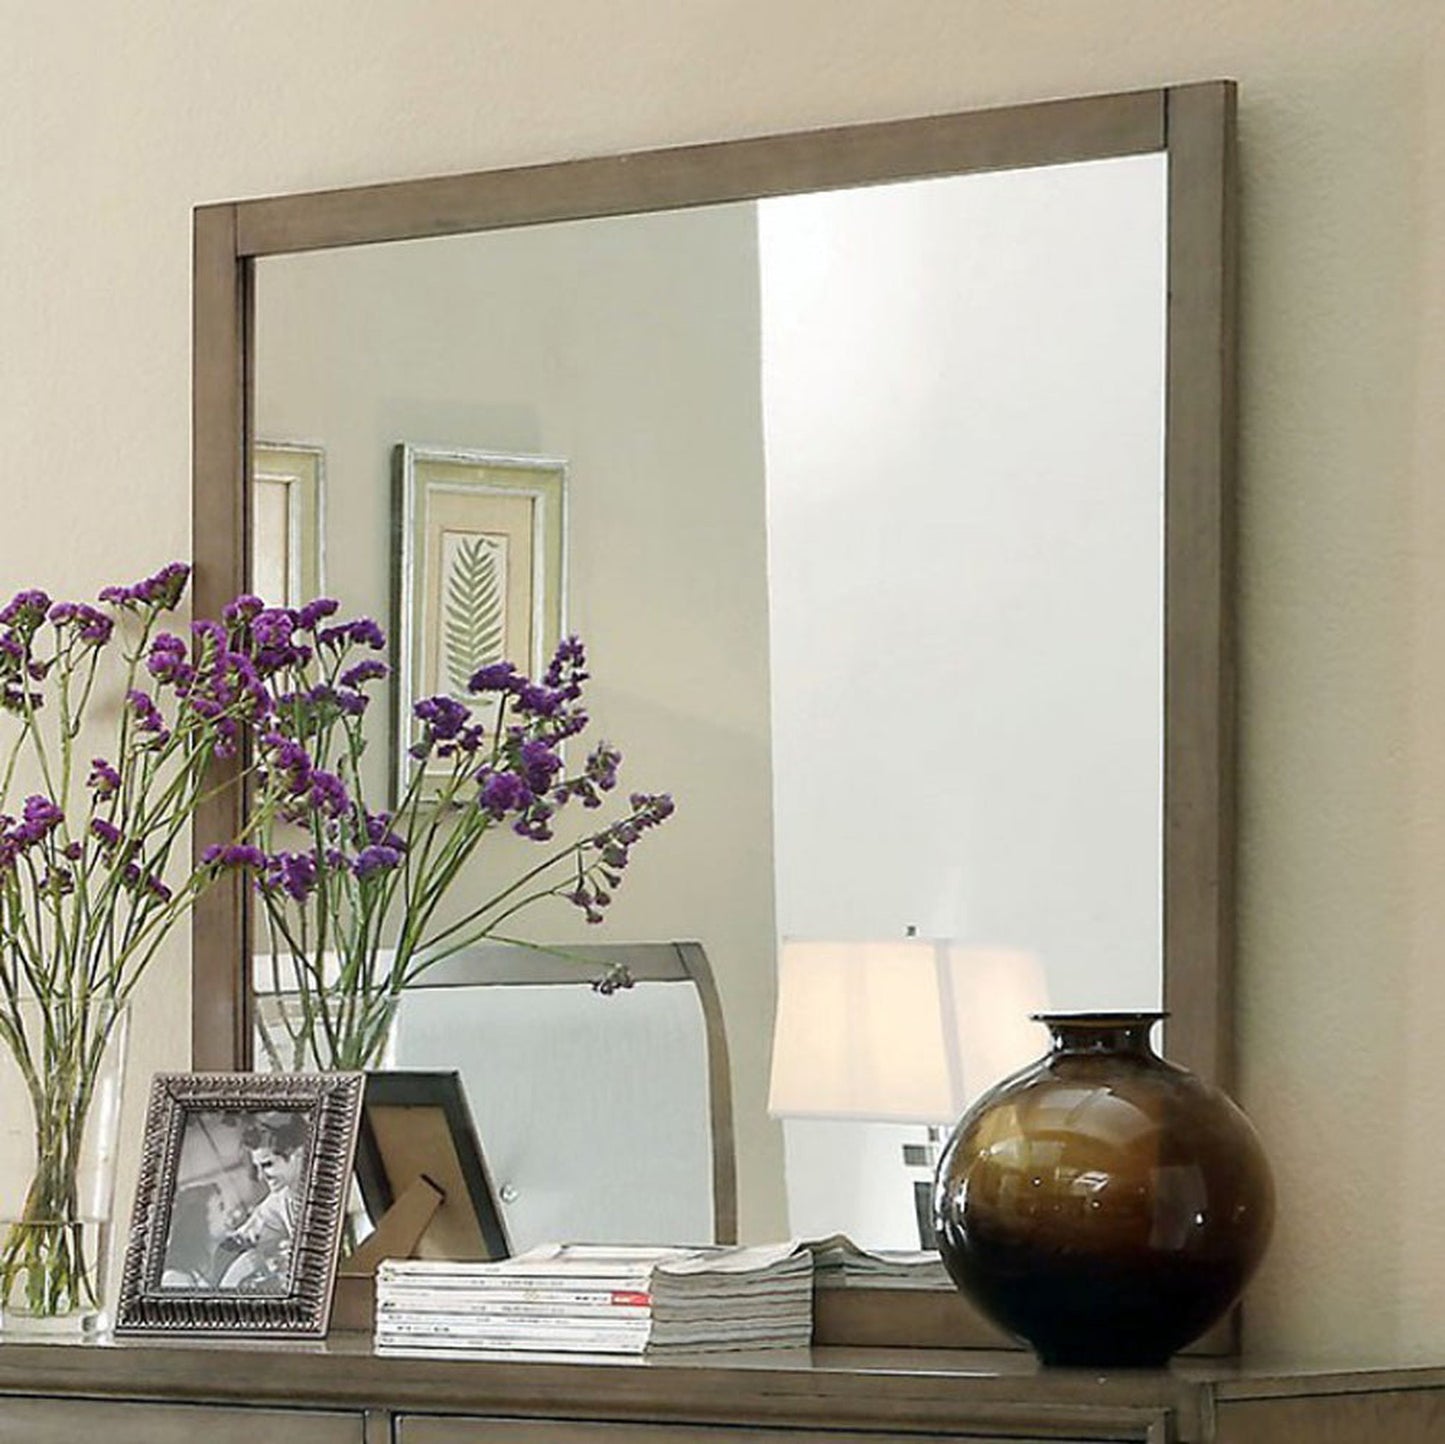 Benzara Enrico I Gray Contemporary Style Wooden Framed Wall Mirror